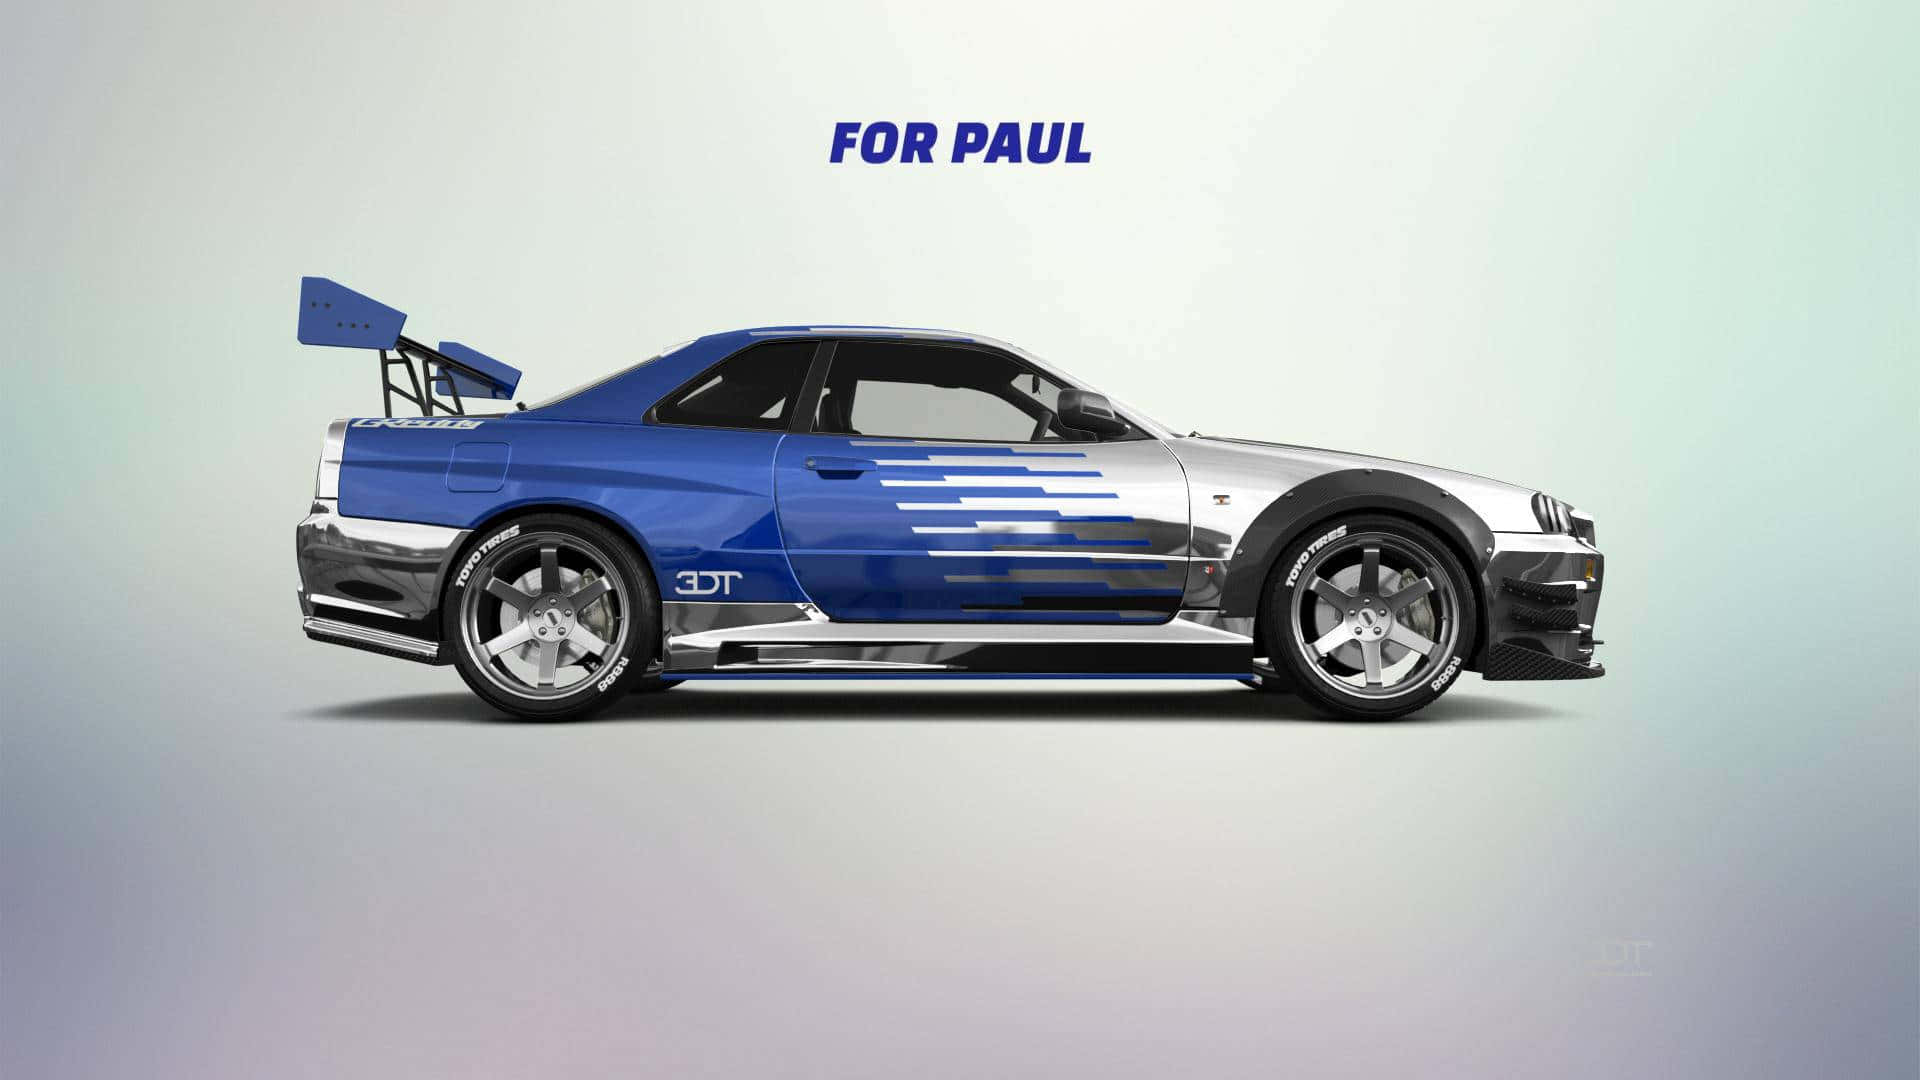 Paul Walker bag rattet af en Nissan Skyline GT-R Wallpaper